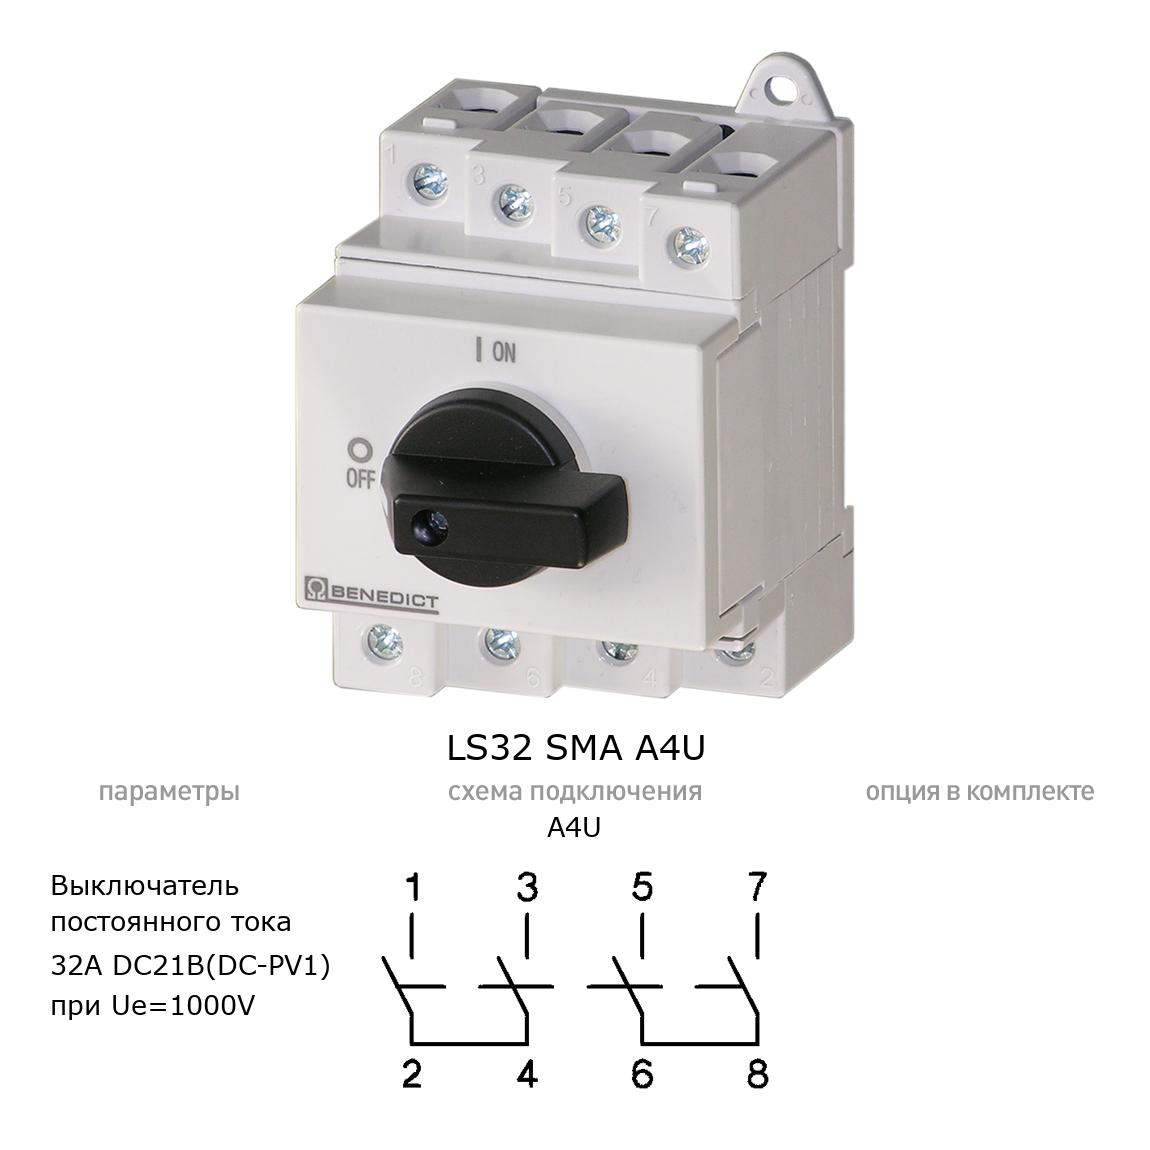 Кулачковый переключатель для постоянного тока (DC) LS32 SMA A4U BENEDICT